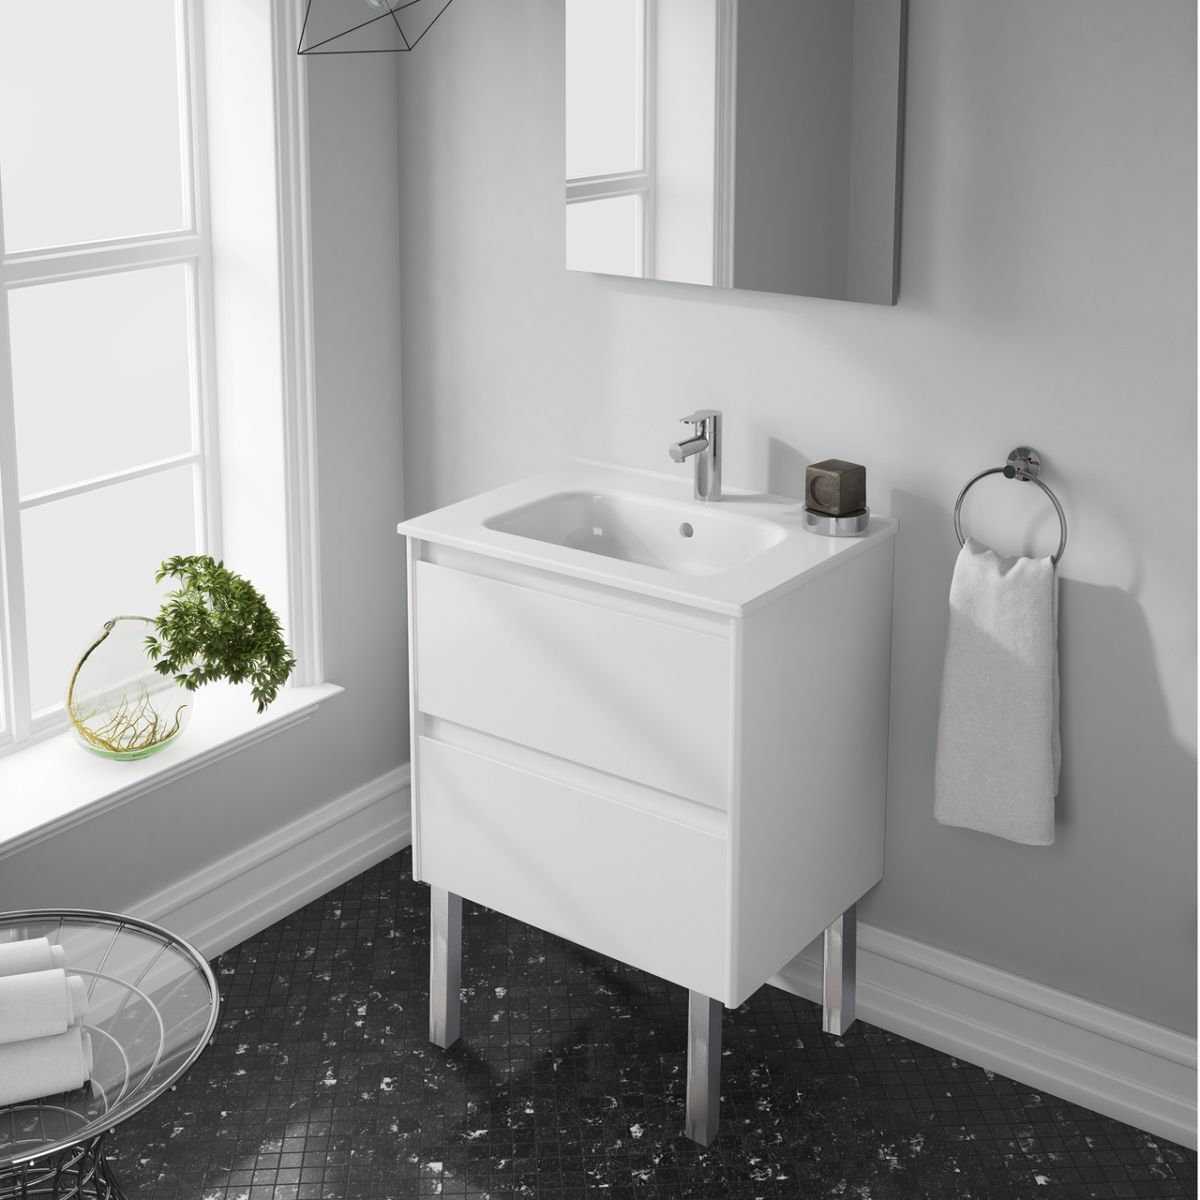 White Fixtures - White Bathroom Vanity